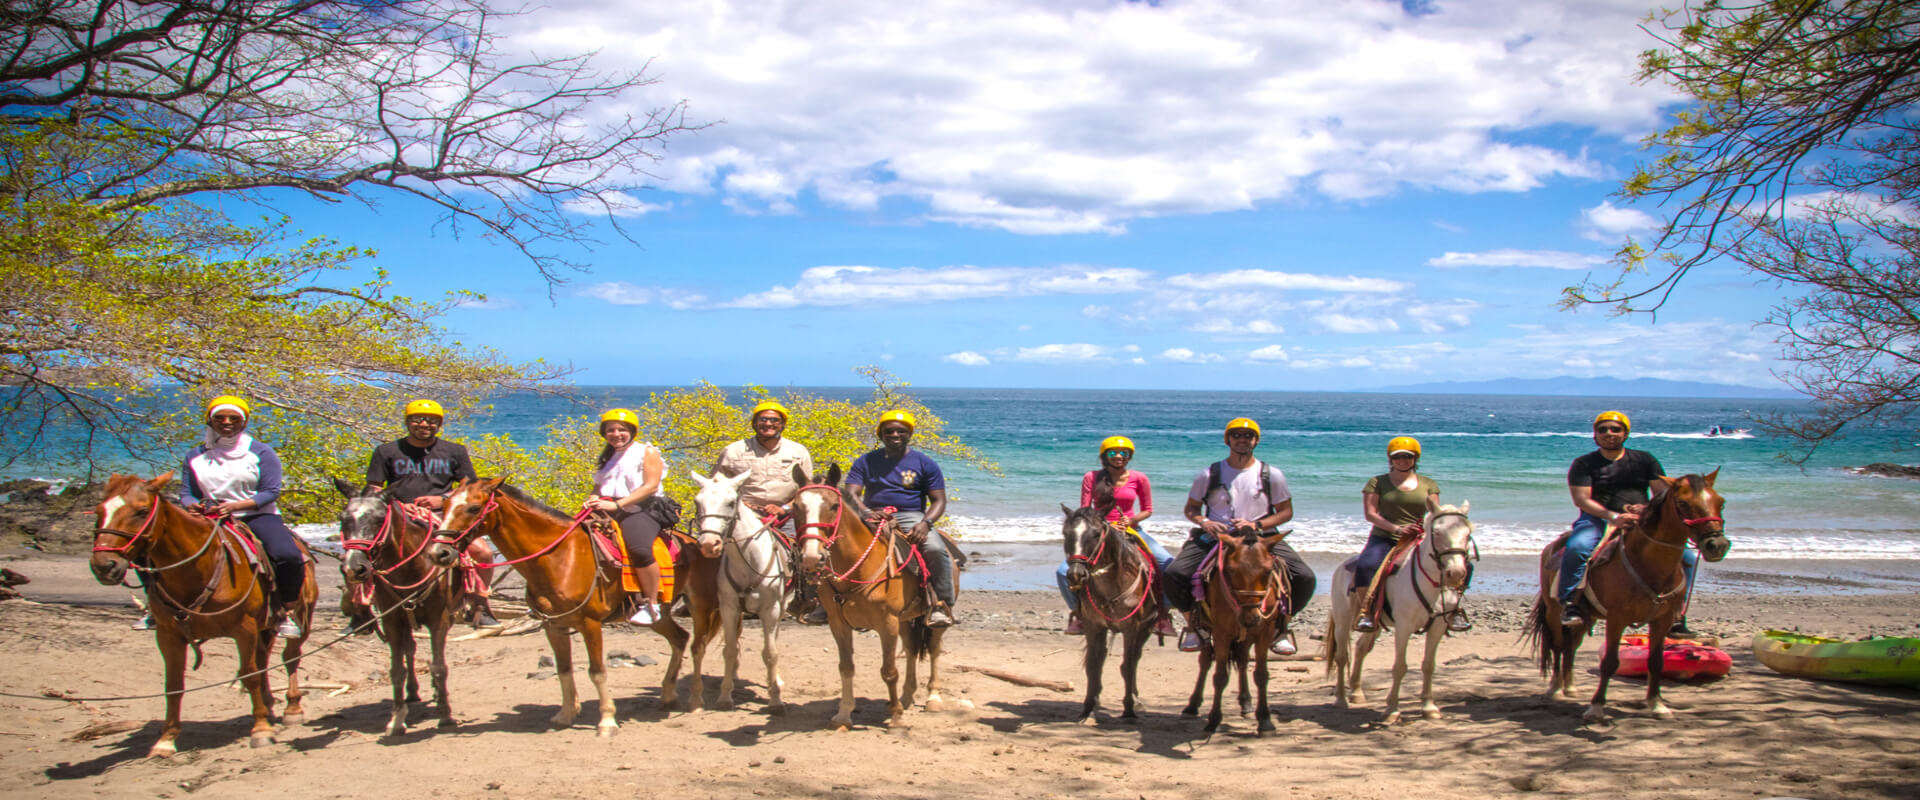 Diamante's Animal Sanctuary Horseback tour | Costa Rica Jade Tours